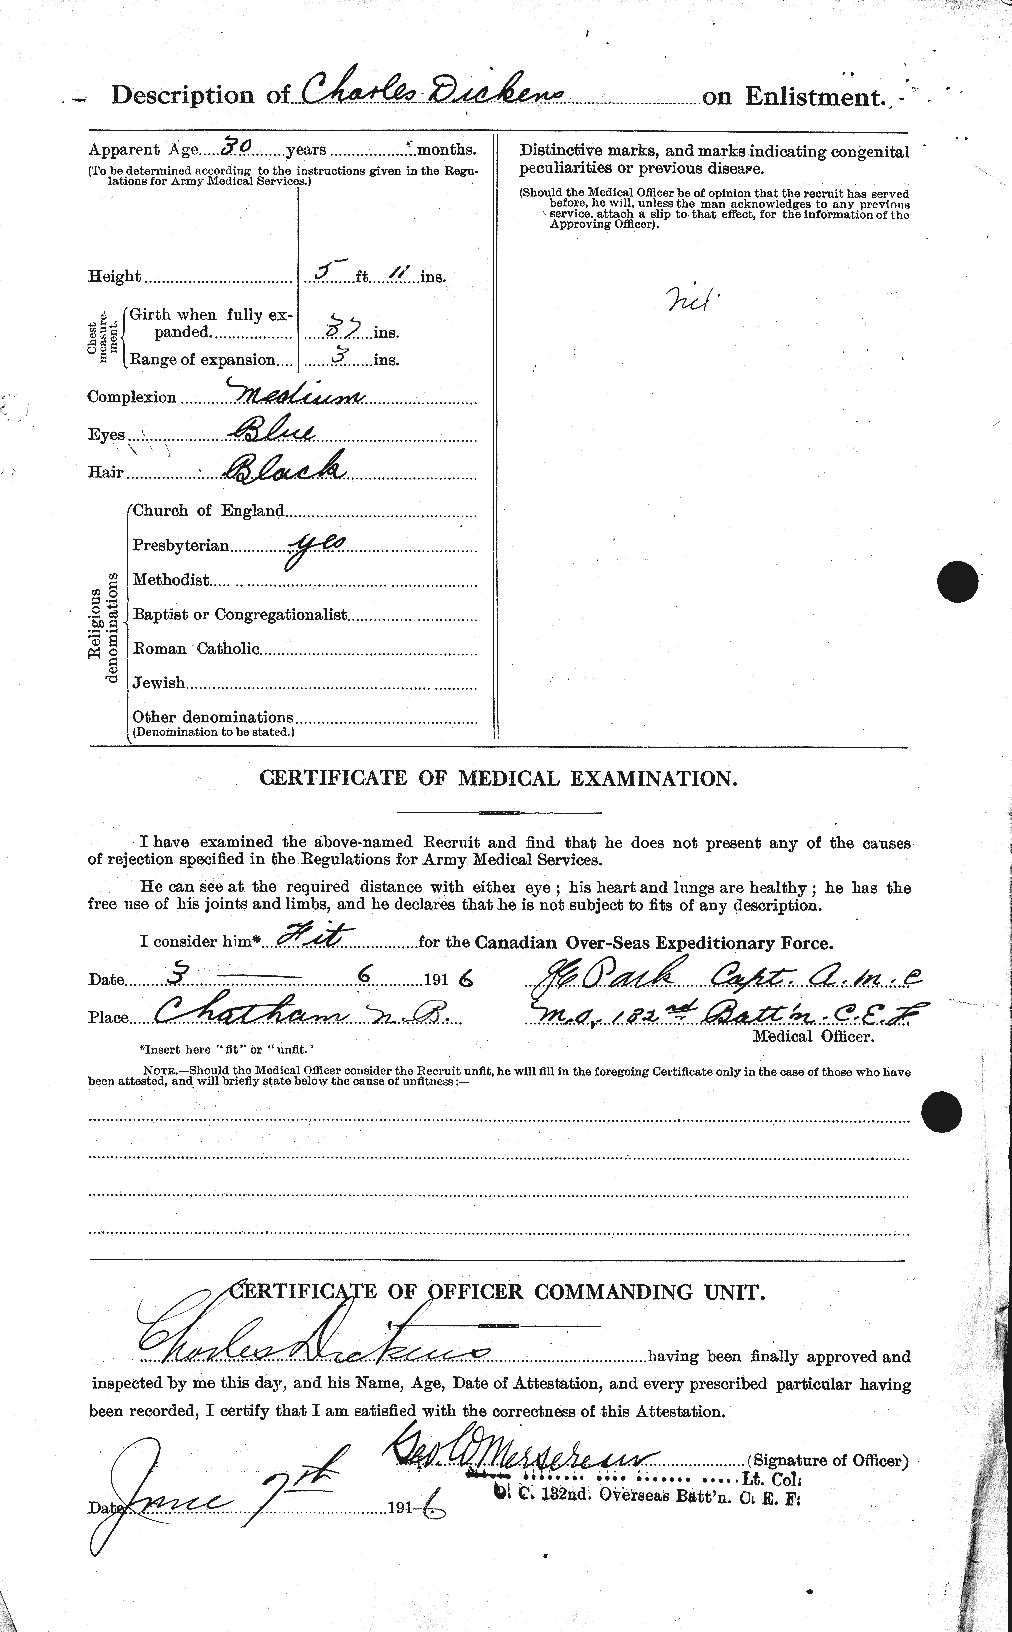 Dossiers du Personnel de la Première Guerre mondiale - CEC 290596b